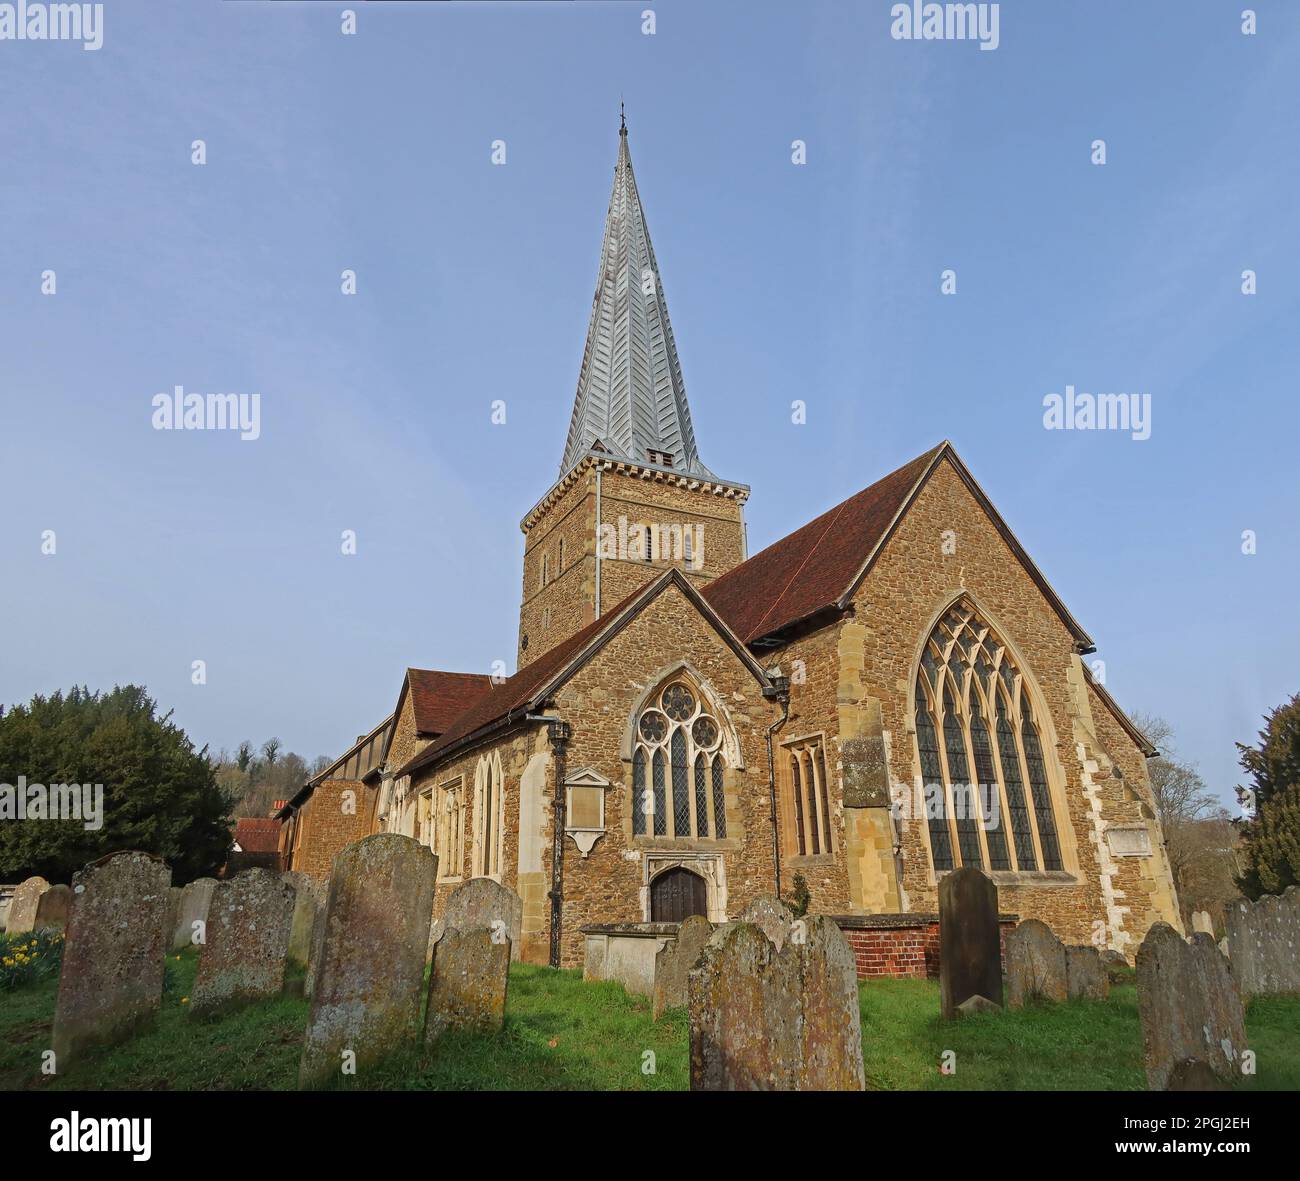 St Peter & Paul Sandstone Church, Borough Rd, Godalming, Surrey, Angleterre, Royaume-Uni, GU7 2AG de la cour de tombe - bâtiment classé de catégorie I Banque D'Images